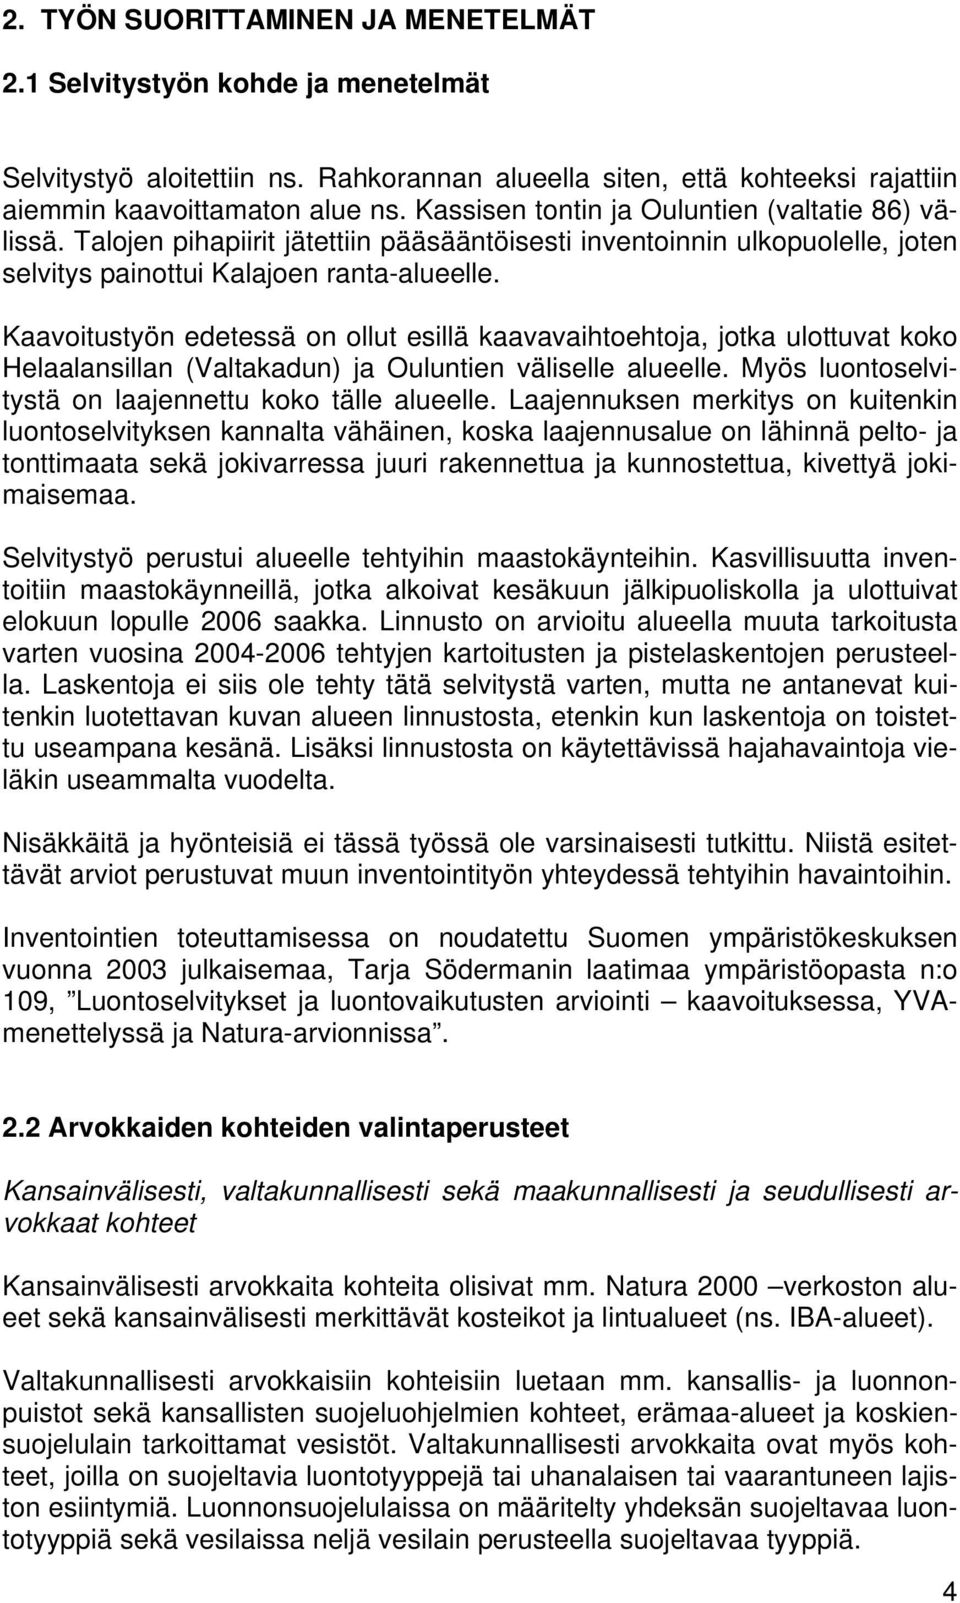 Kaavoitustyön edetessä on ollut esillä kaavavaihtoehtoja, jotka ulottuvat koko Helaalansillan (Valtakadun) ja Ouluntien väliselle alueelle. Myös luontoselvitystä on laajennettu koko tälle alueelle.